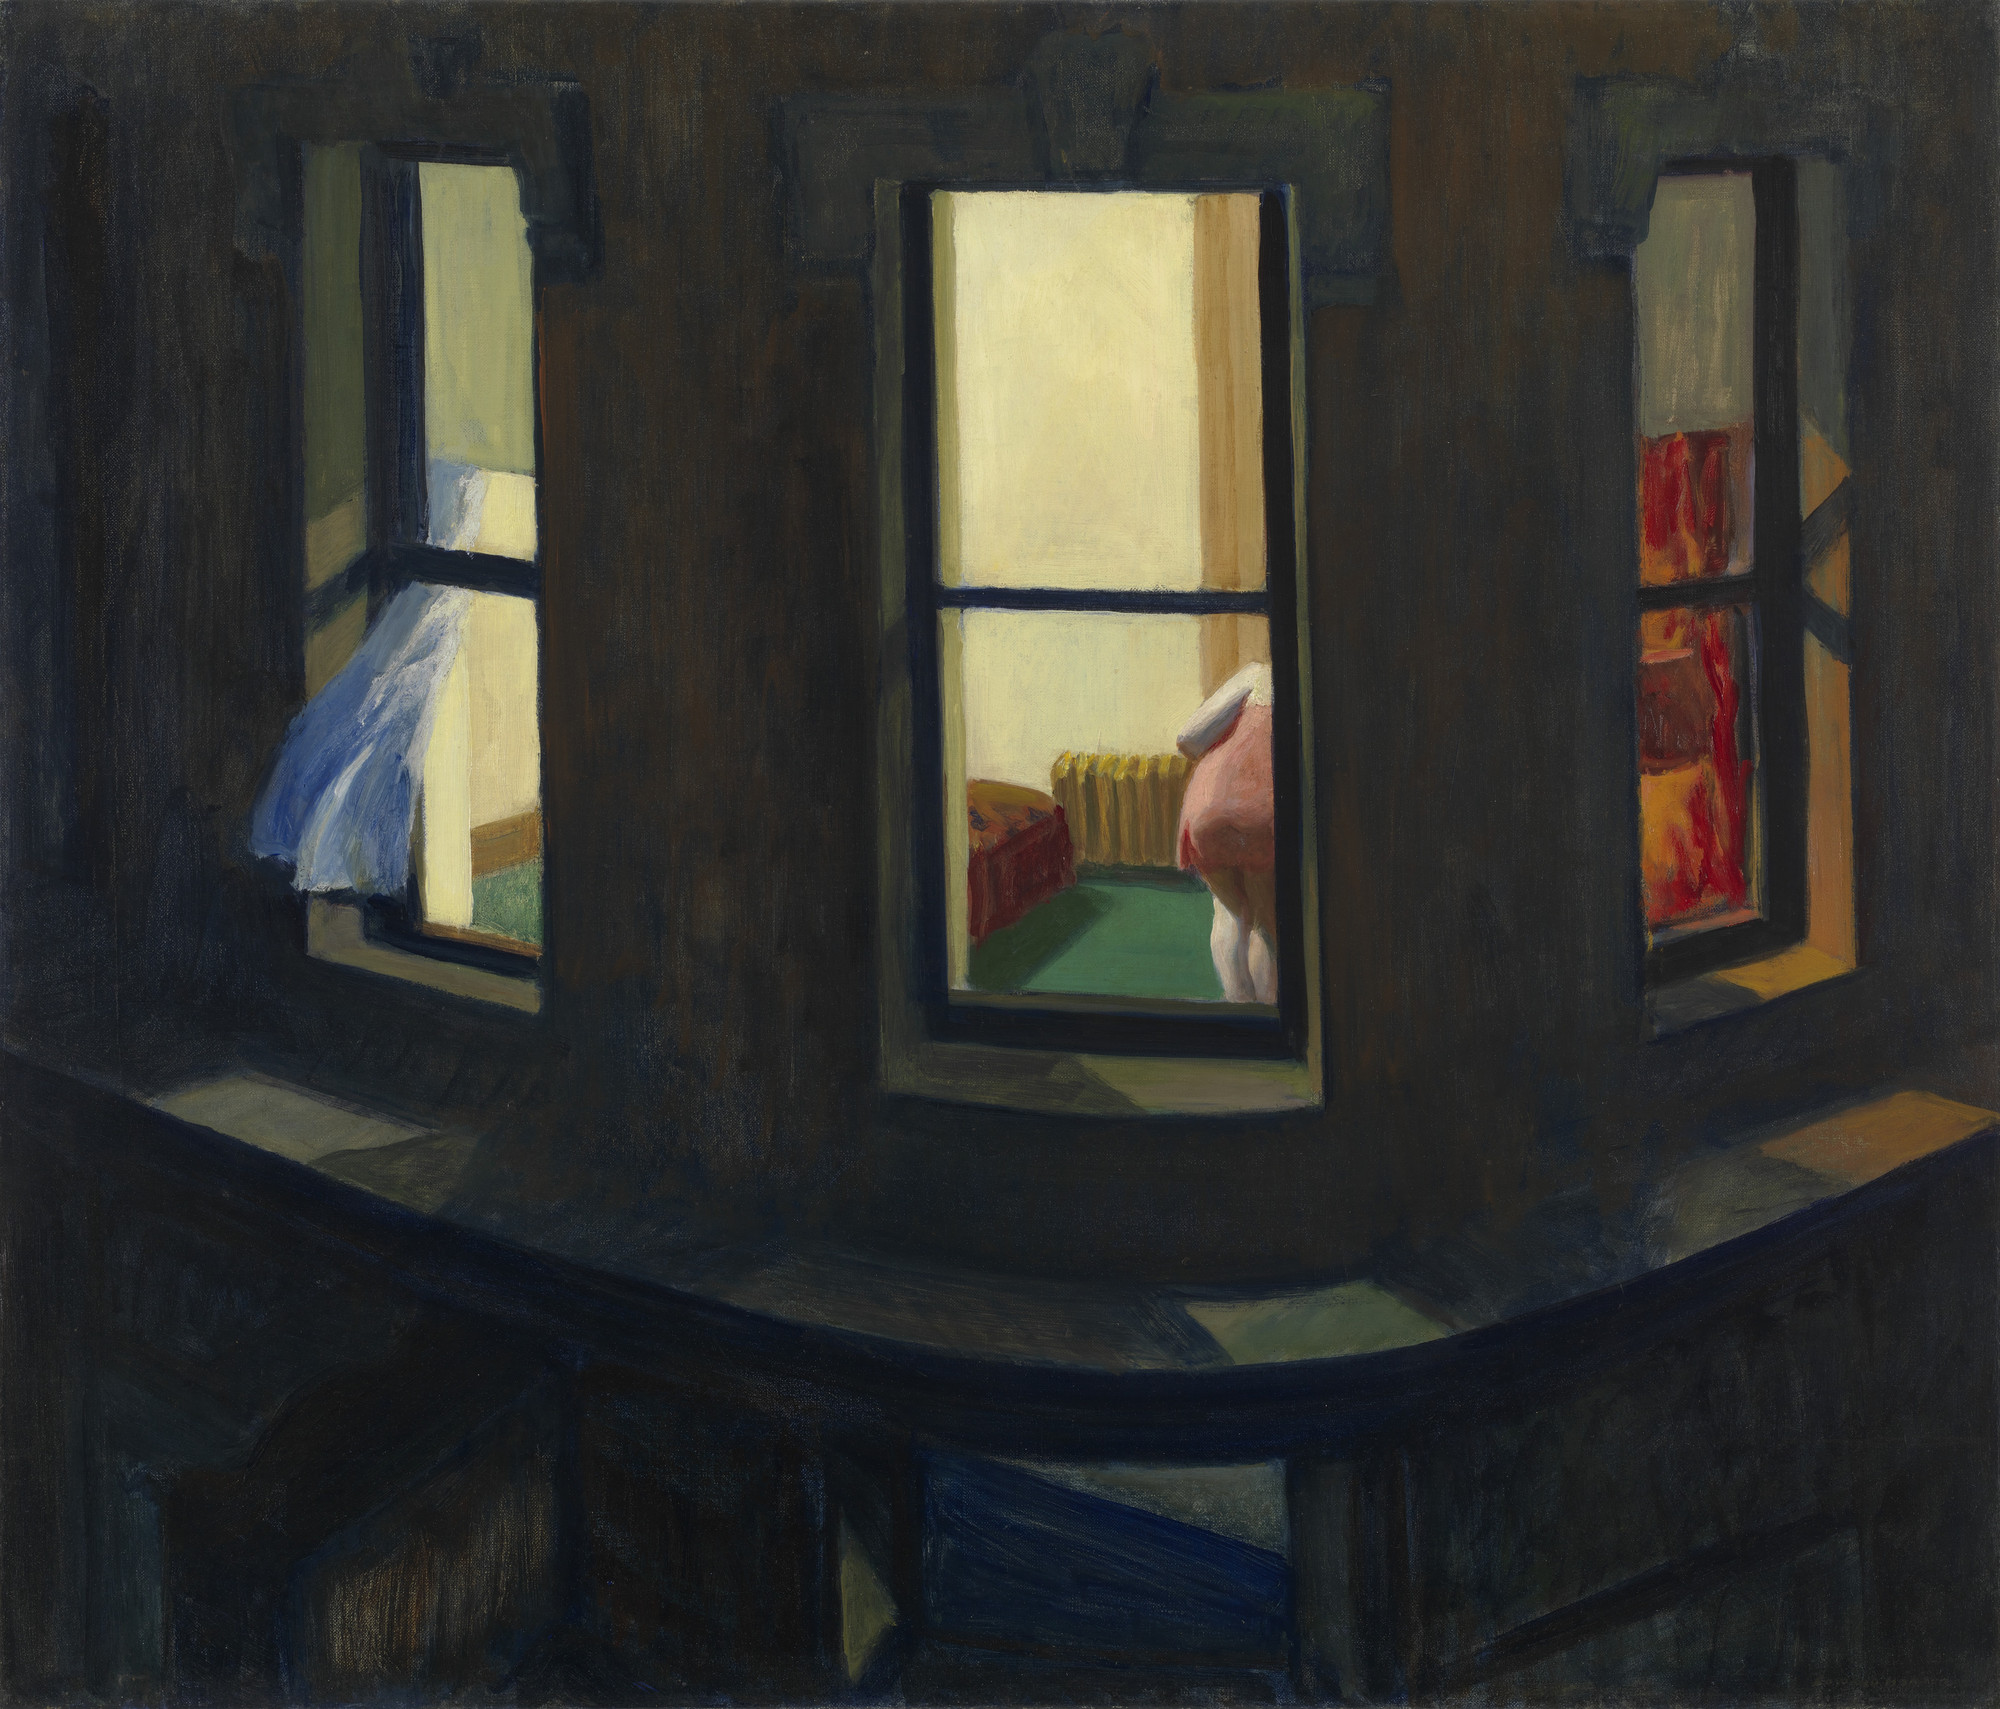 Night Windows by Edward Hopper—1928